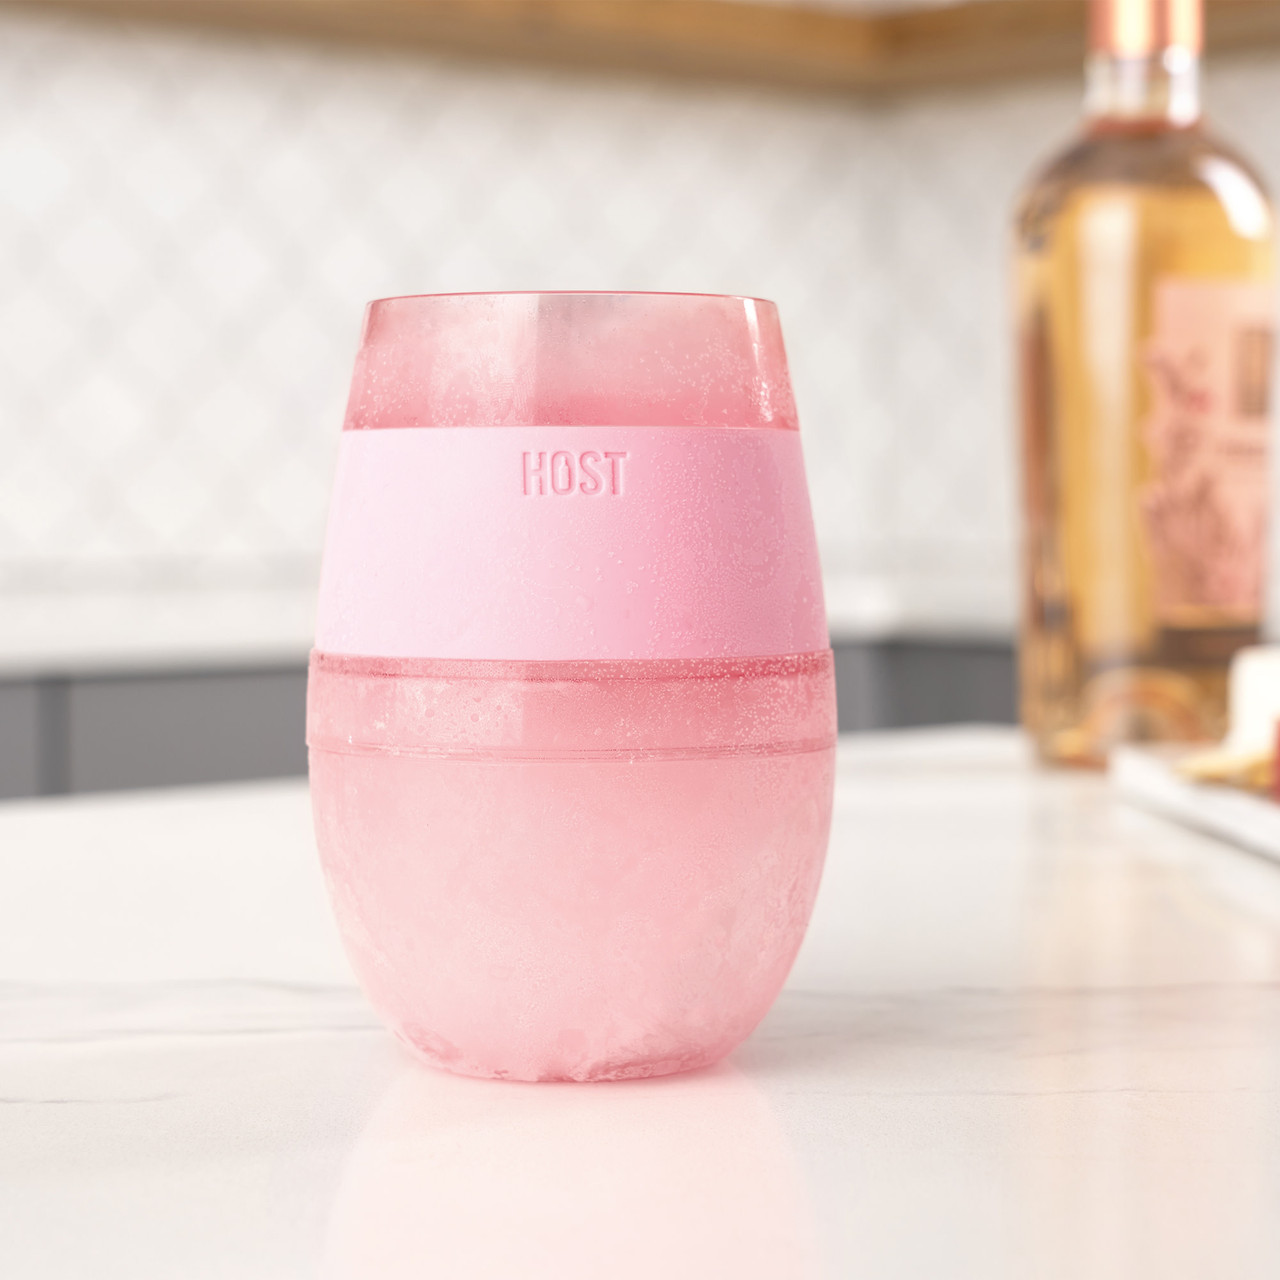 Wine FREEZE Cooling Cup in Translucent Pink Set of 4 by HOST